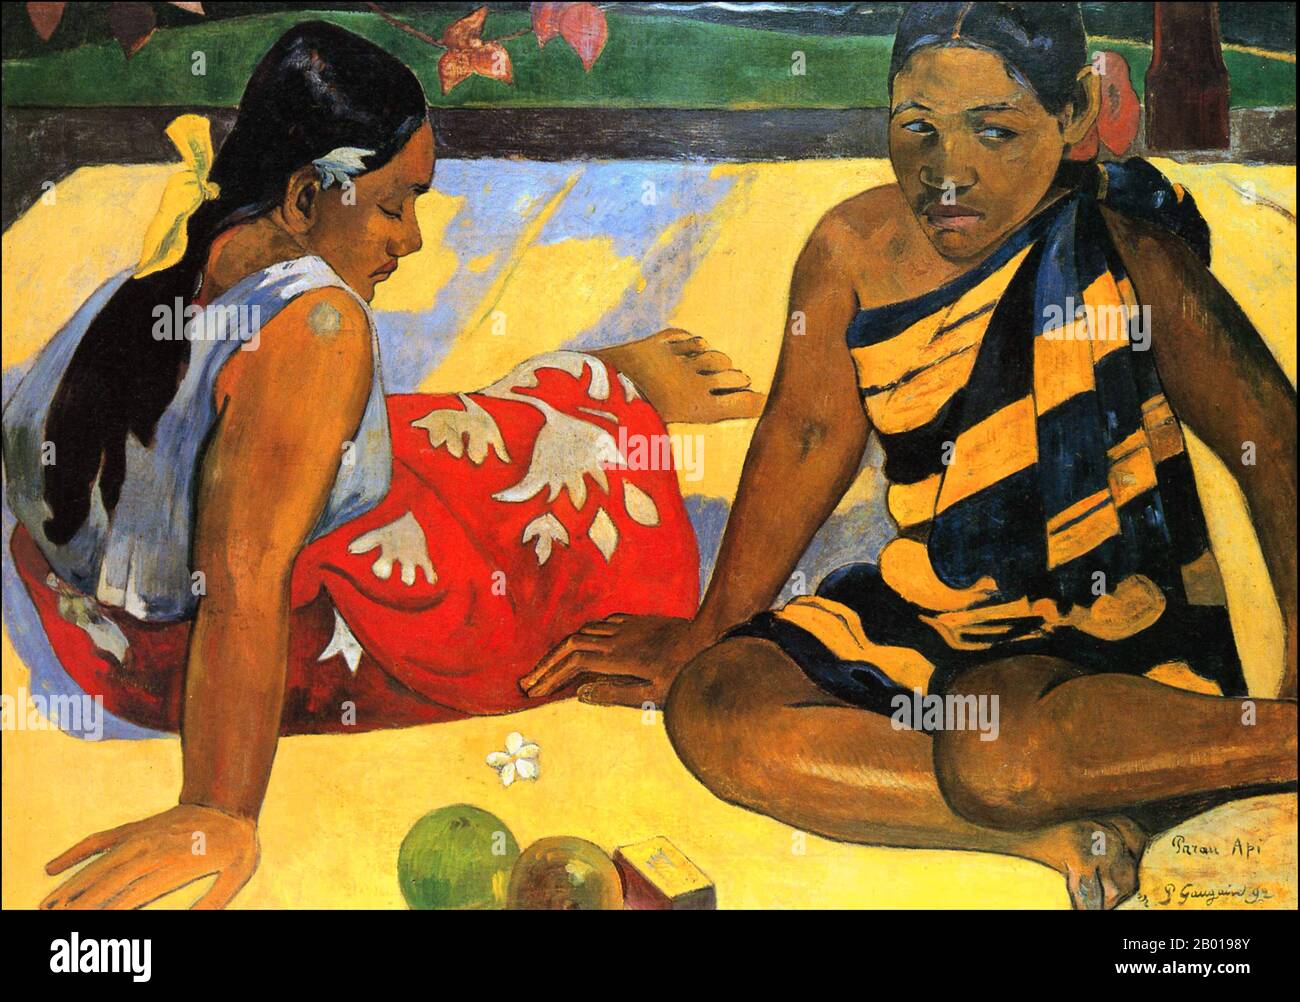 Tahiti: 'Parau API' (Quoi de neuf?, deux femmes de Tahiti). Peinture à l'huile sur toile par Paul Gauguin (7 juin 1848 - 8 mai 1903), 1892. Paul Gauguin est né à Paris en 1848 et a passé une partie de son enfance au Pérou. Il a travaillé comme courtier en Bourse avec peu de succès et a souffert de crises de dépression grave. Il a également peint. En 1891, Gauguin, frustré par le manque de reconnaissance à la maison et financièrement indigente, navigue vers les tropiques pour échapper à la civilisation européenne et "tout ce qui est artificiel et conventionnel". Son temps il y avait le sujet de beaucoup d'intérêt à l'époque et dans les temps modernes. Banque D'Images